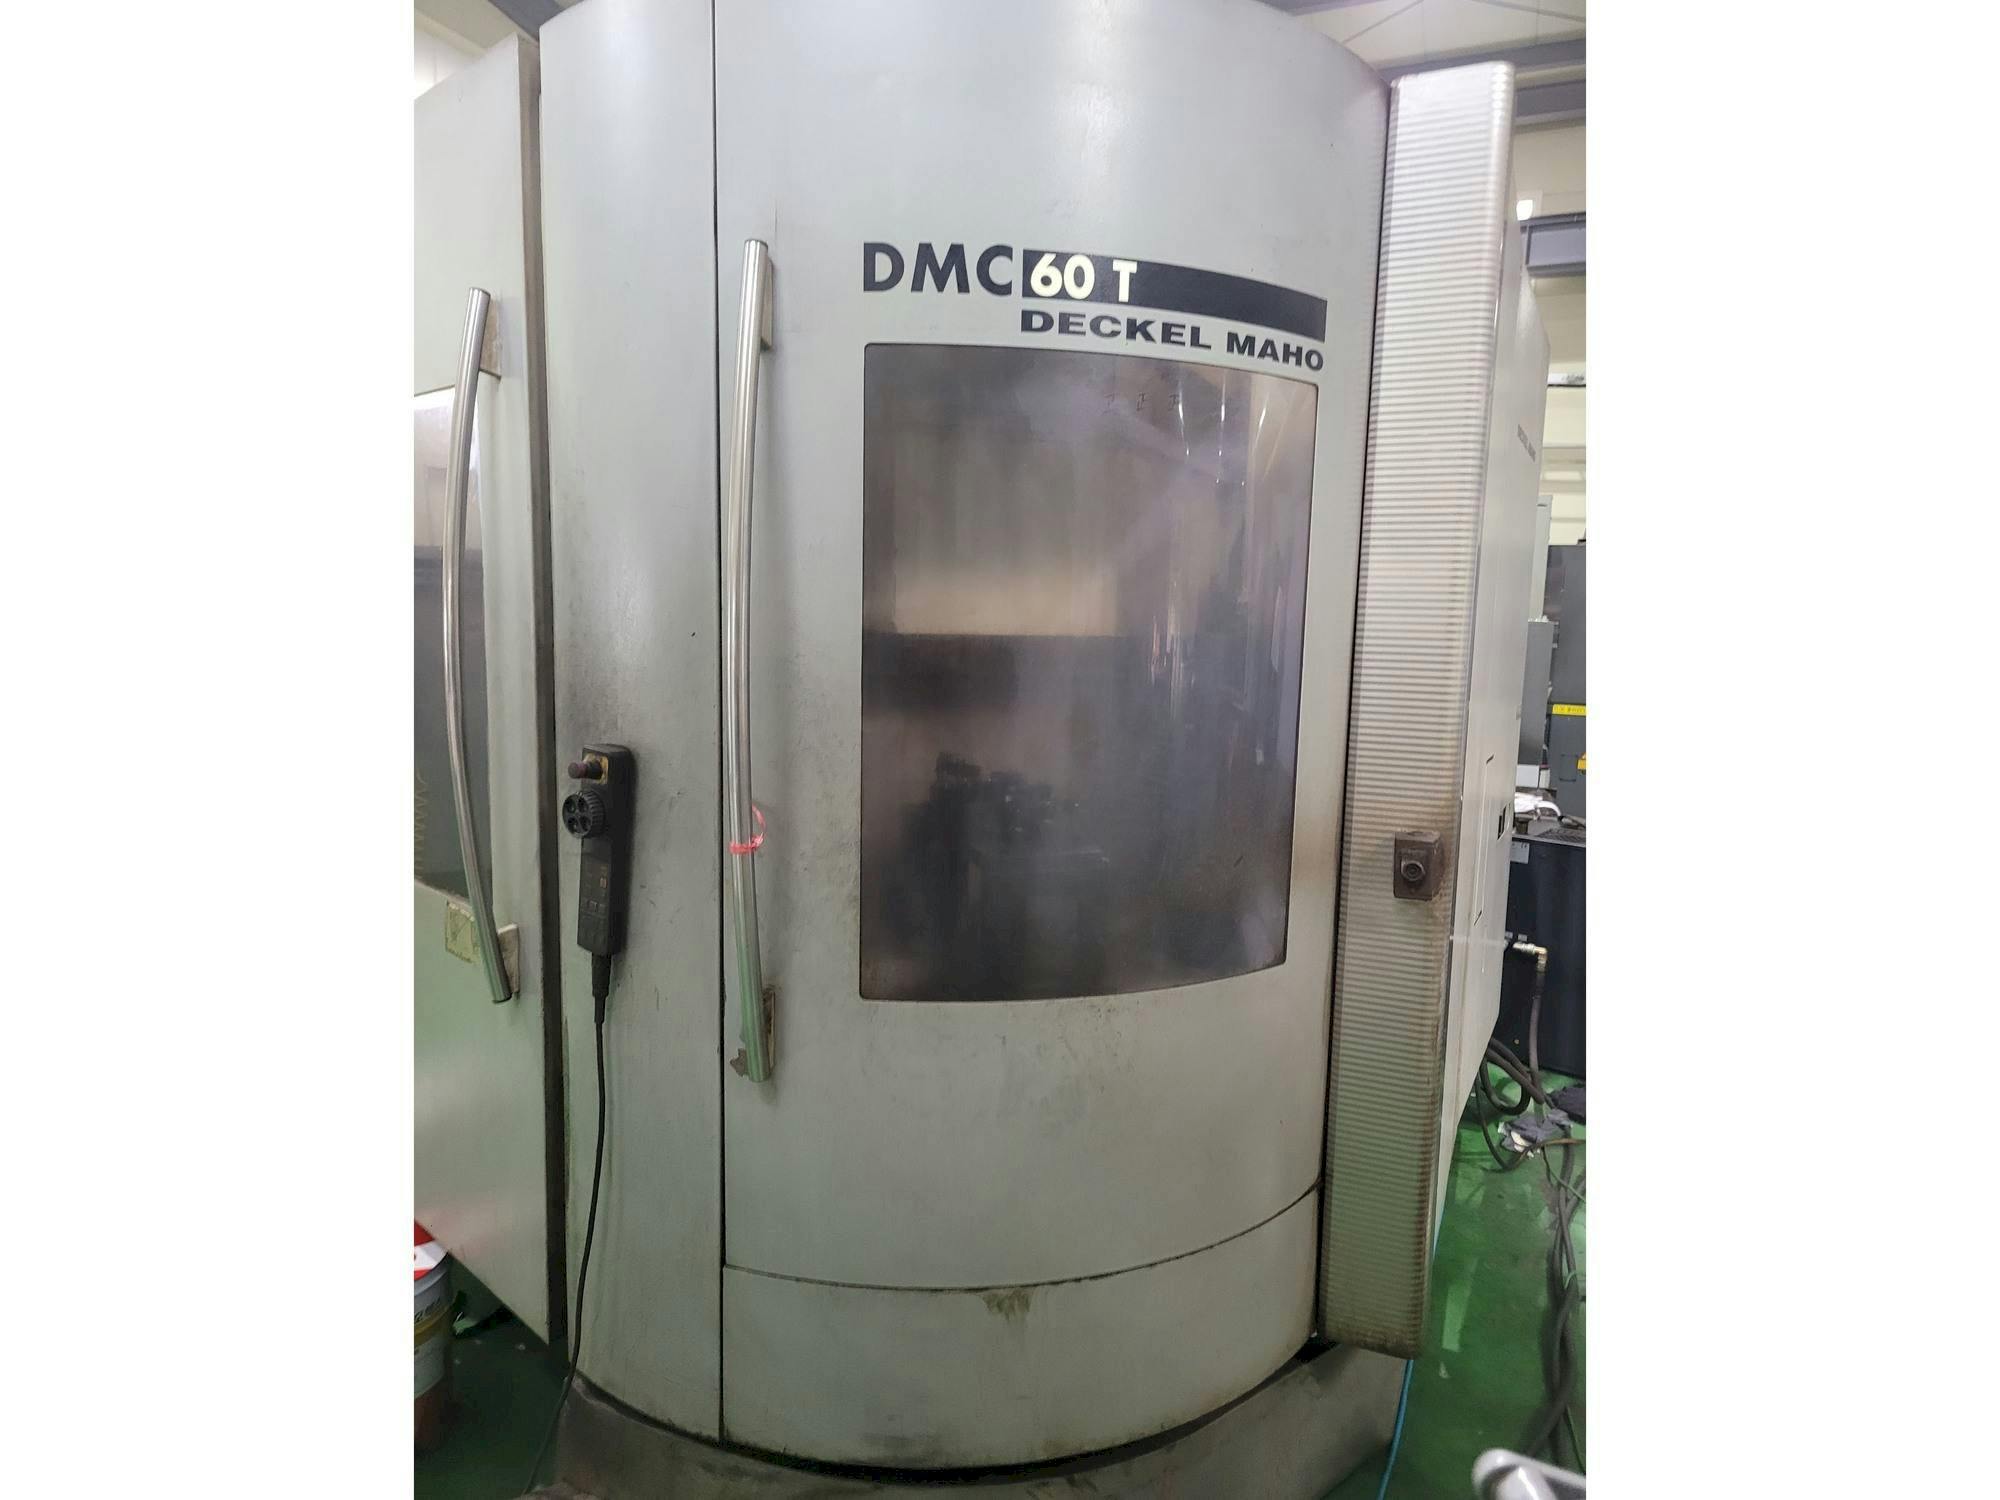 Vista Frontal  da DECKEL MAHO DMC 60 T  máquina